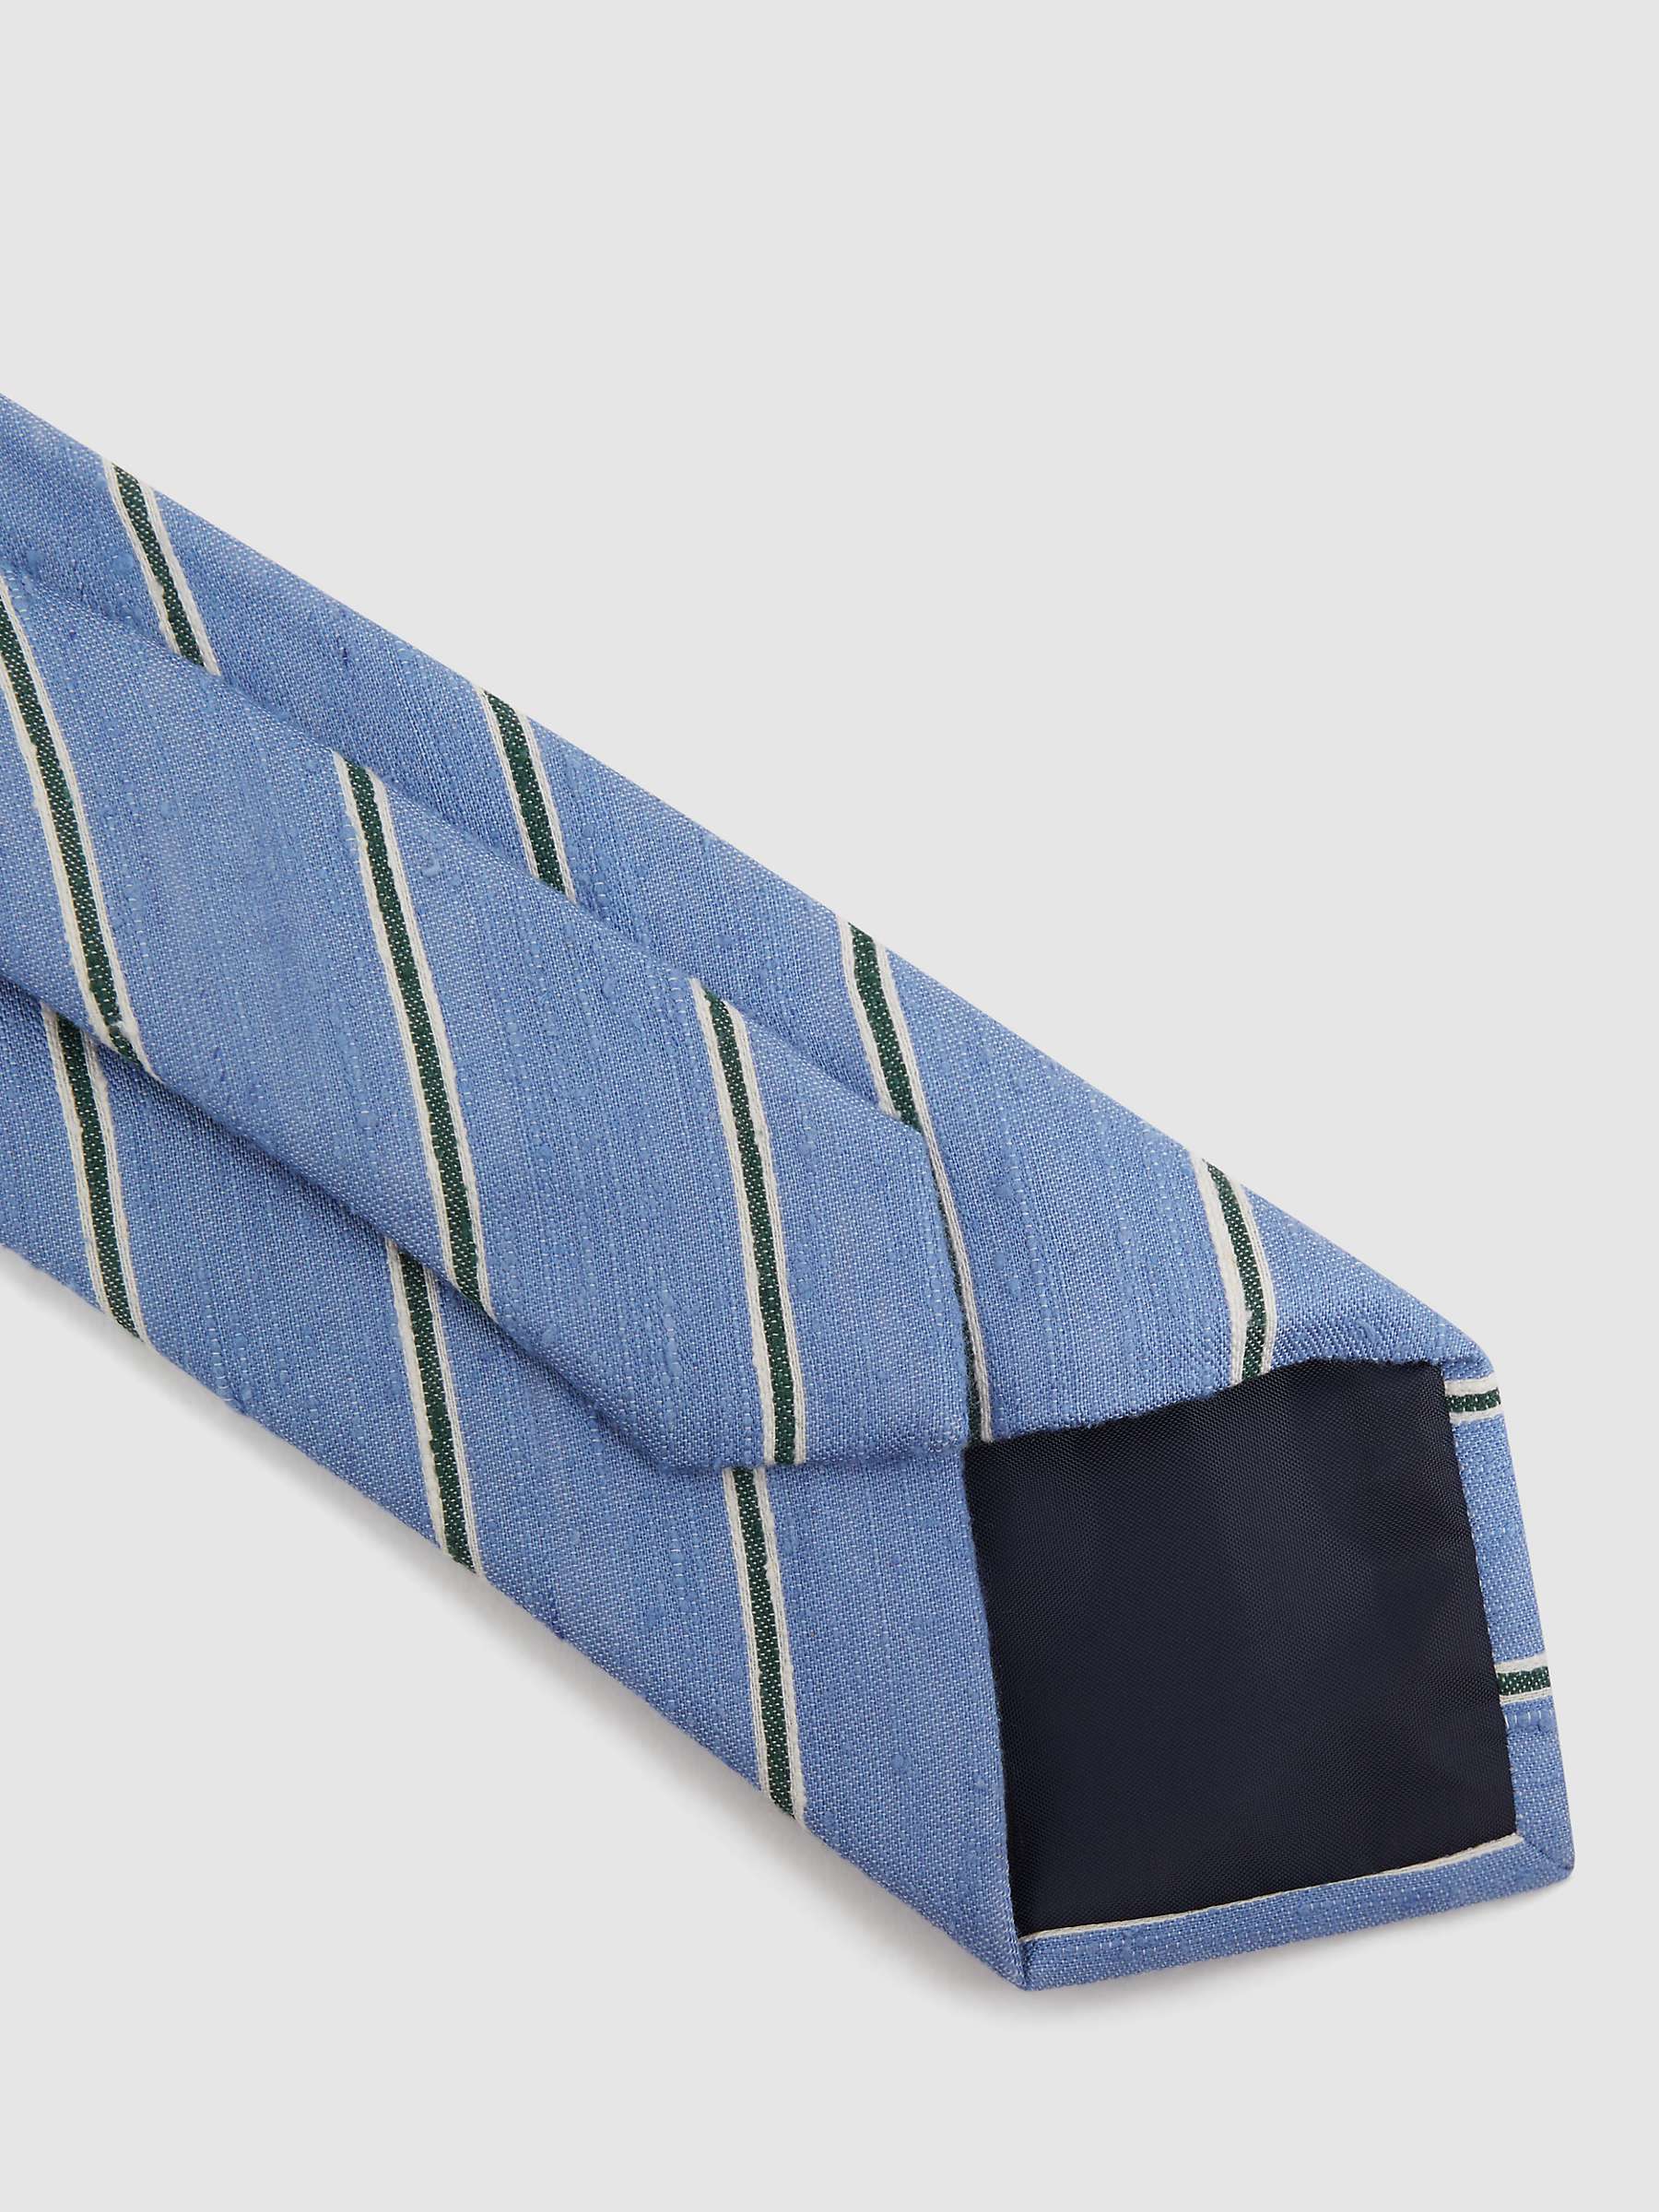 Buy Reiss Ravenna Stripe Silk Blend Tie Online at johnlewis.com